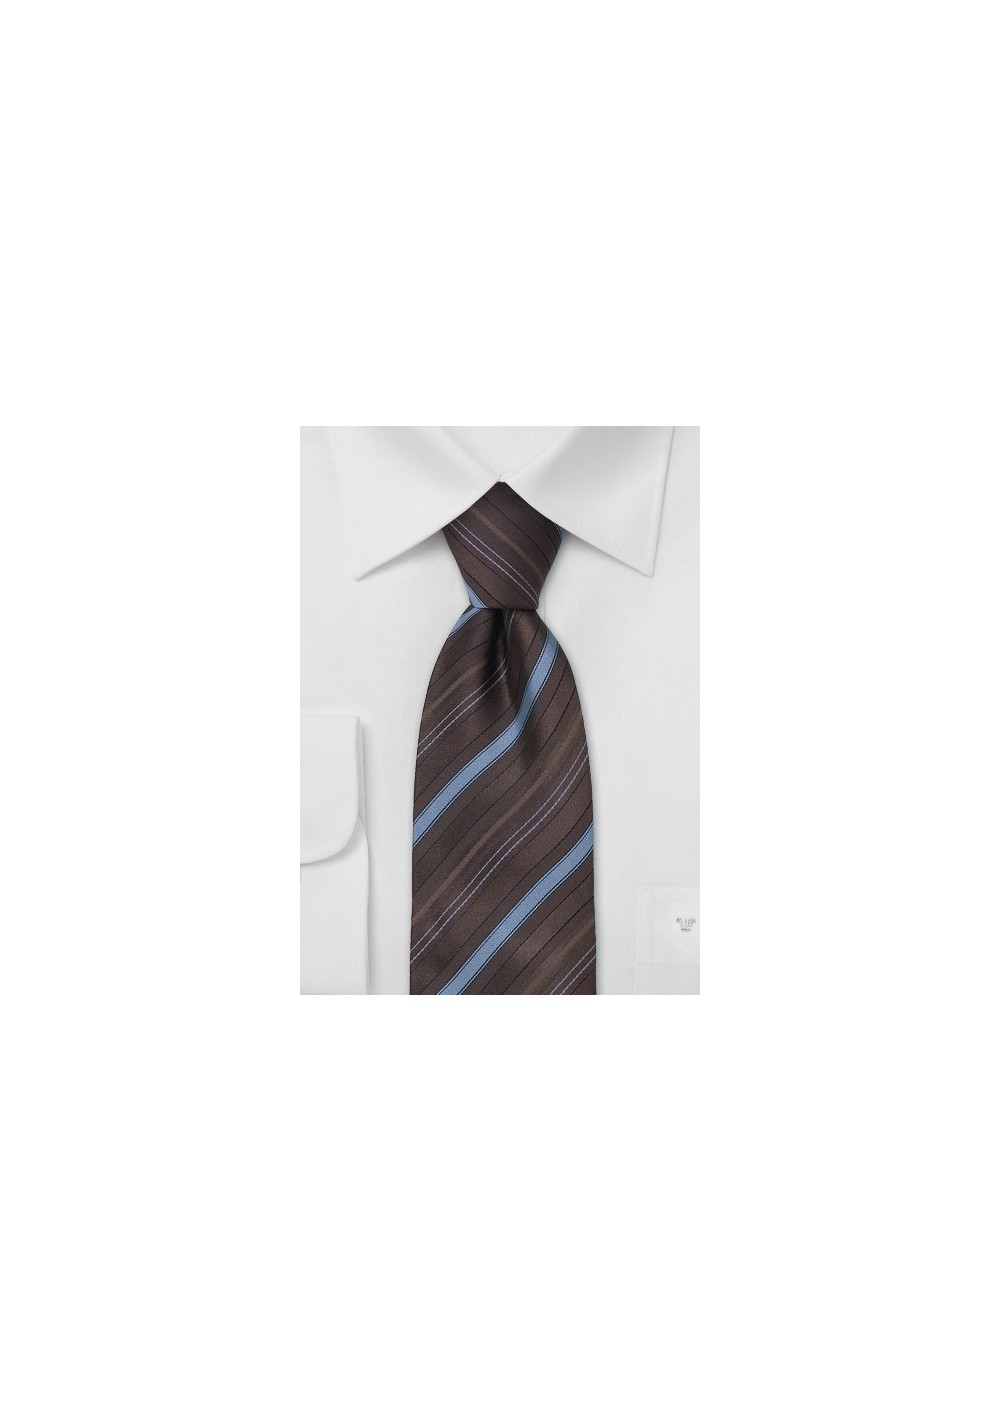 Striped Silk Necktie - Brown and light blue striped silk tie